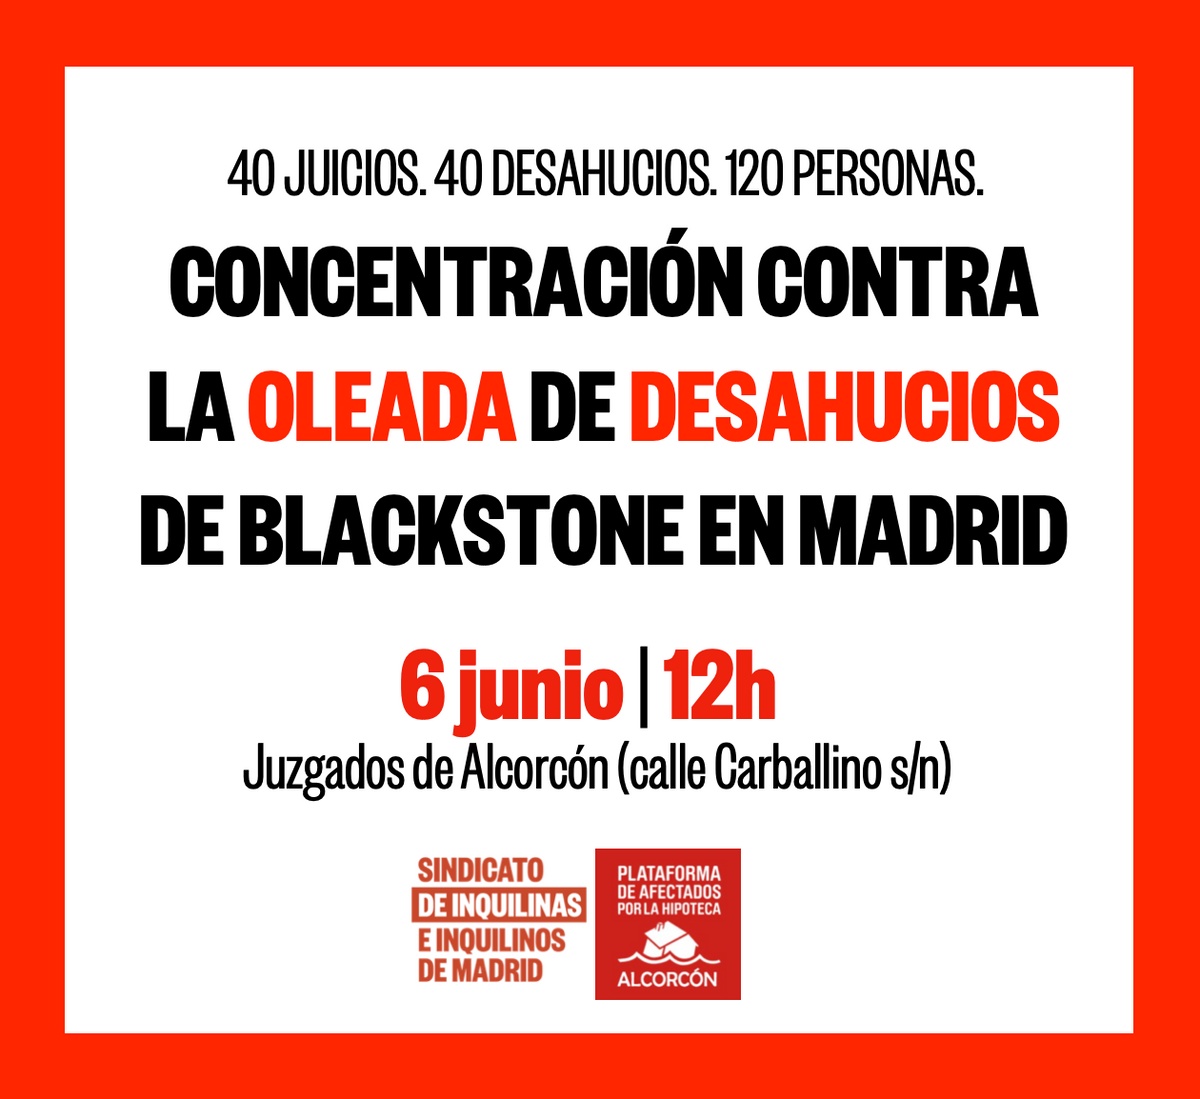 Concentración contra la oleada de desahucios de Blackstone en Madrid